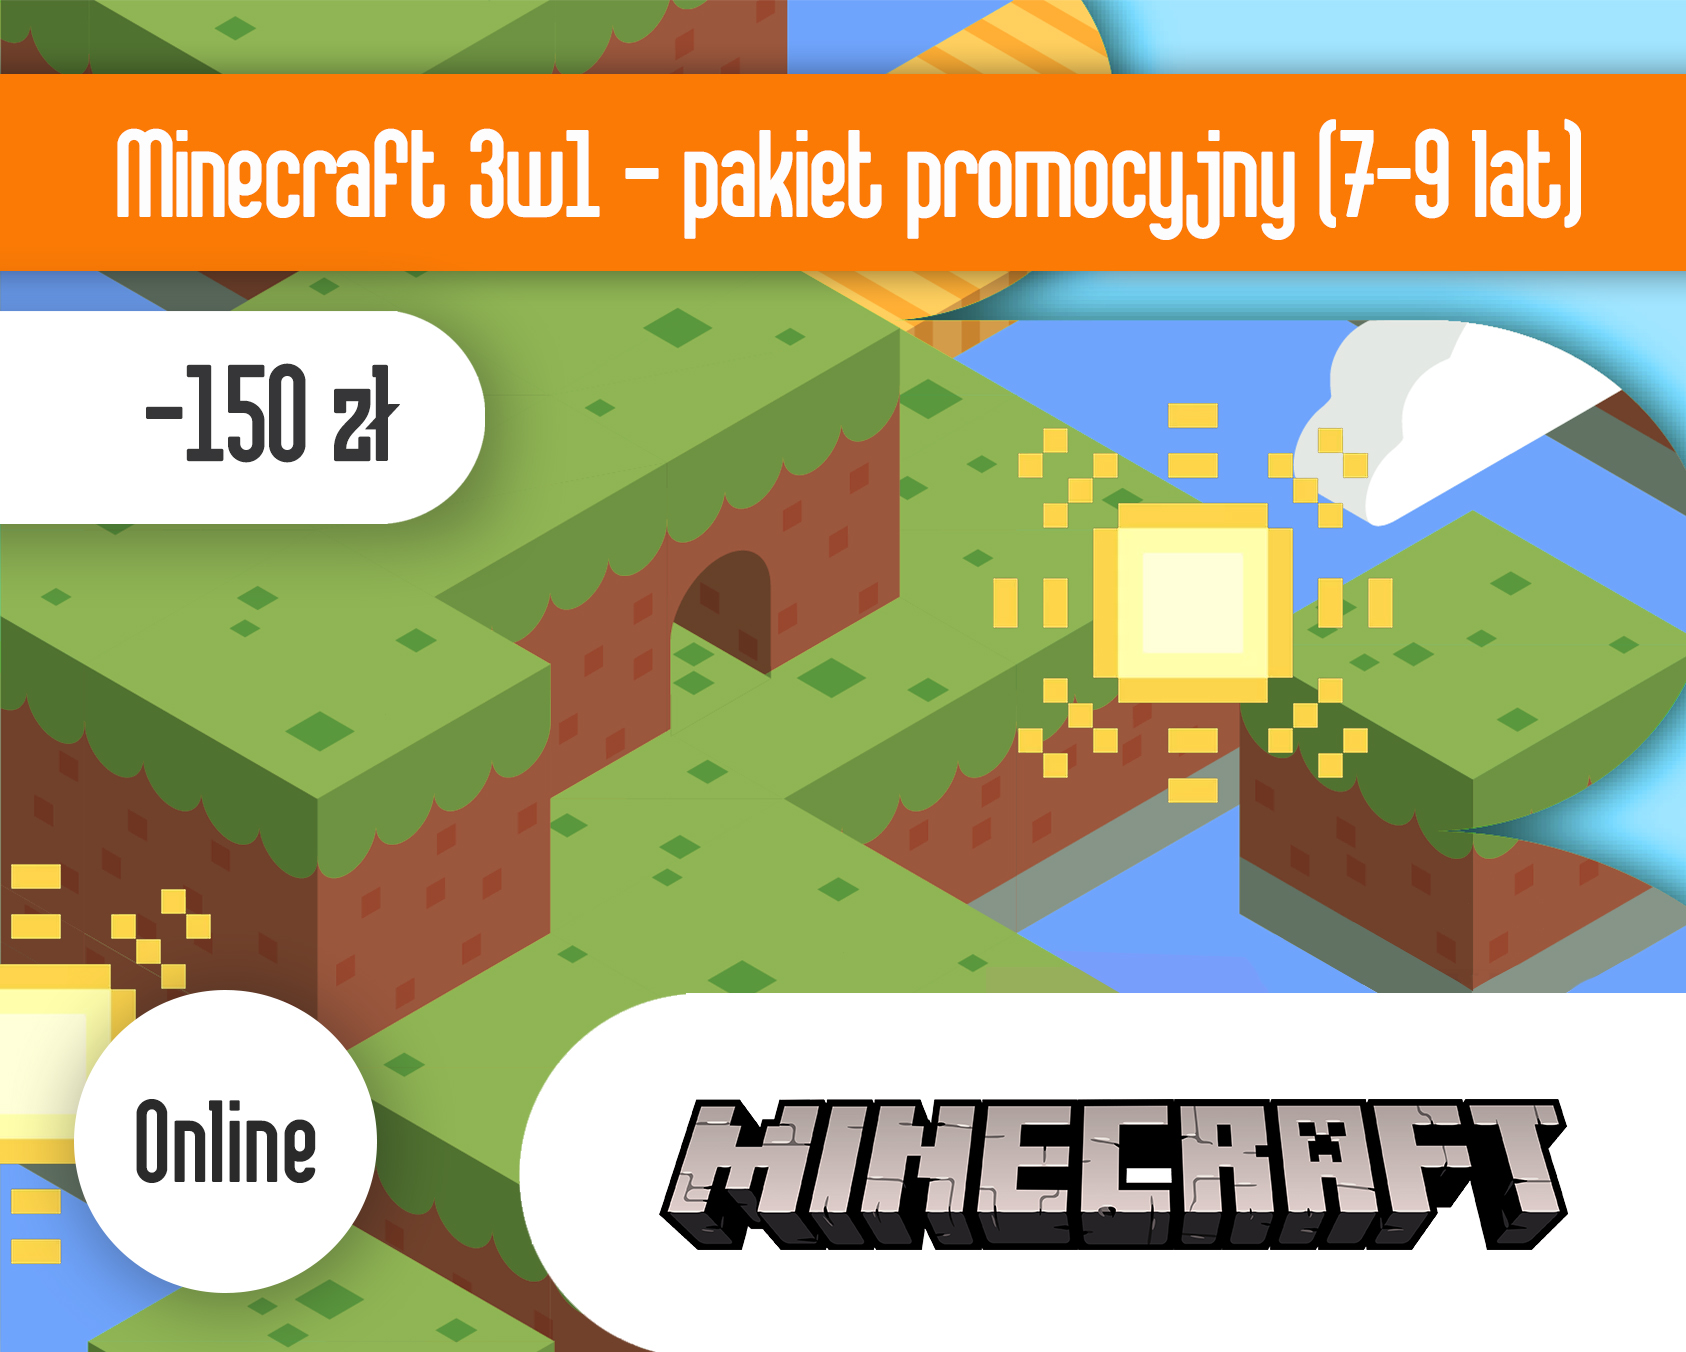 Minecraft 3w1 ONLINE - pakiet promocyjny 